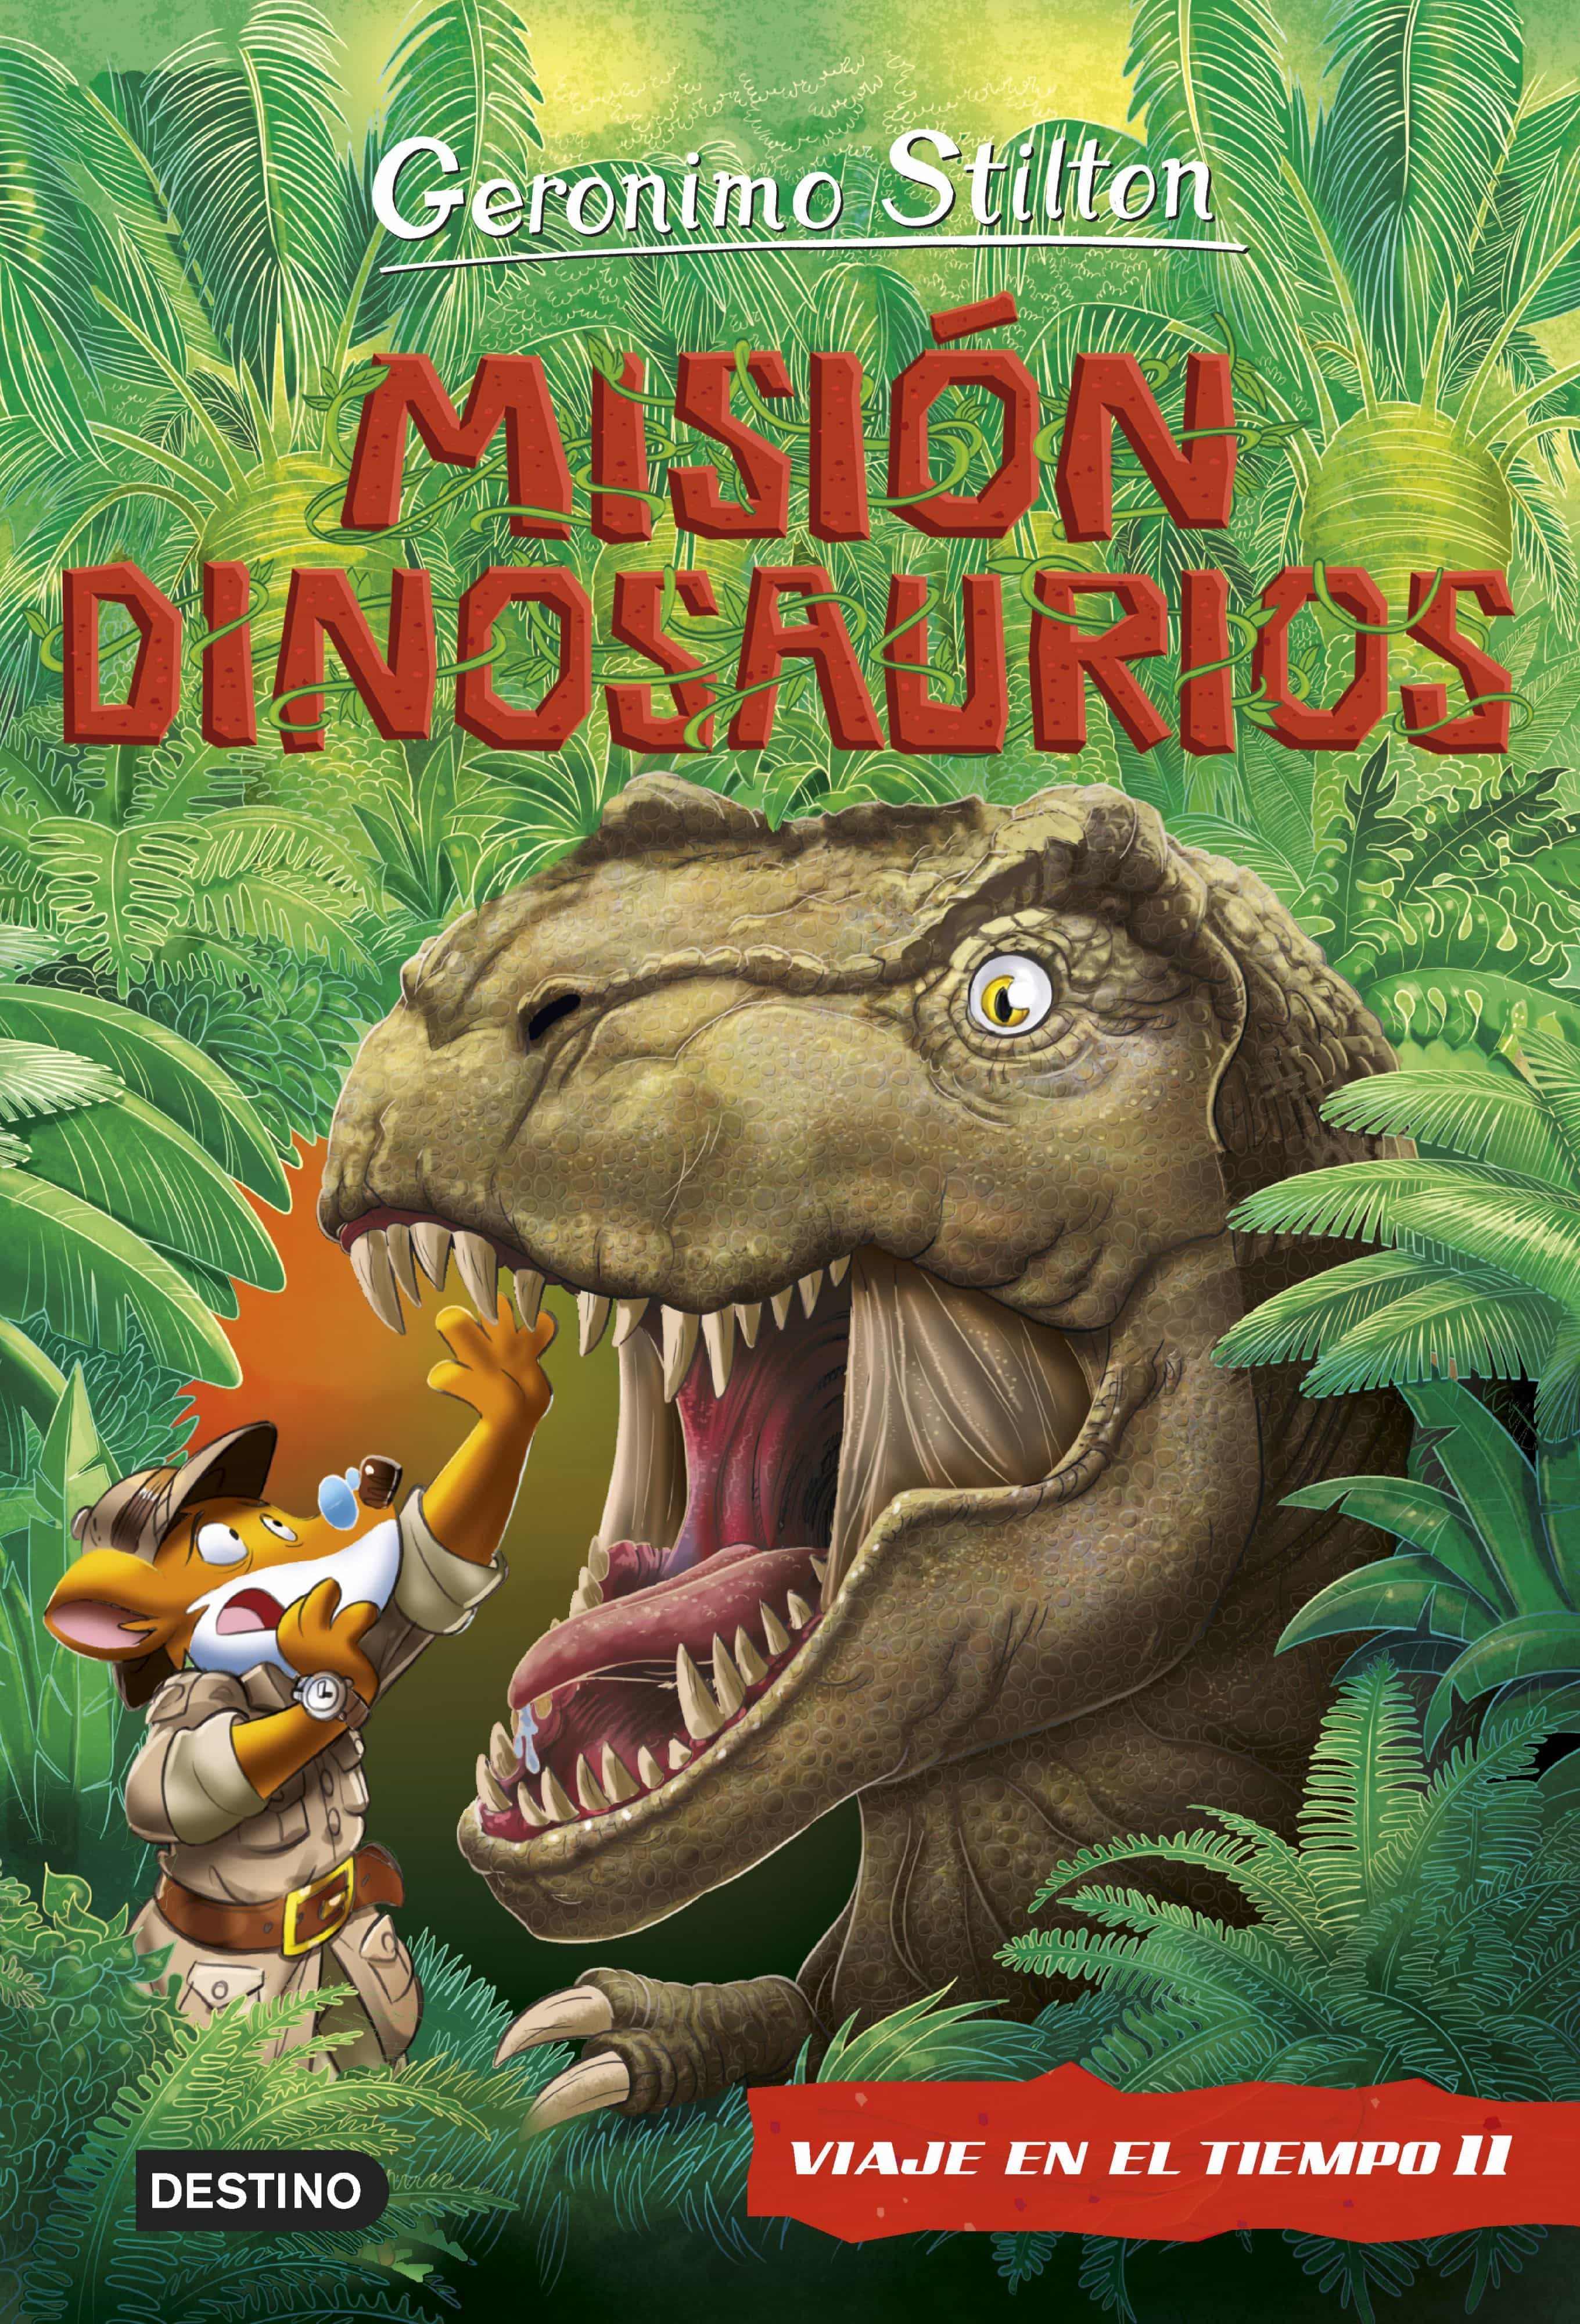 Viaje en el tiempo 11 Misión dinosaurios